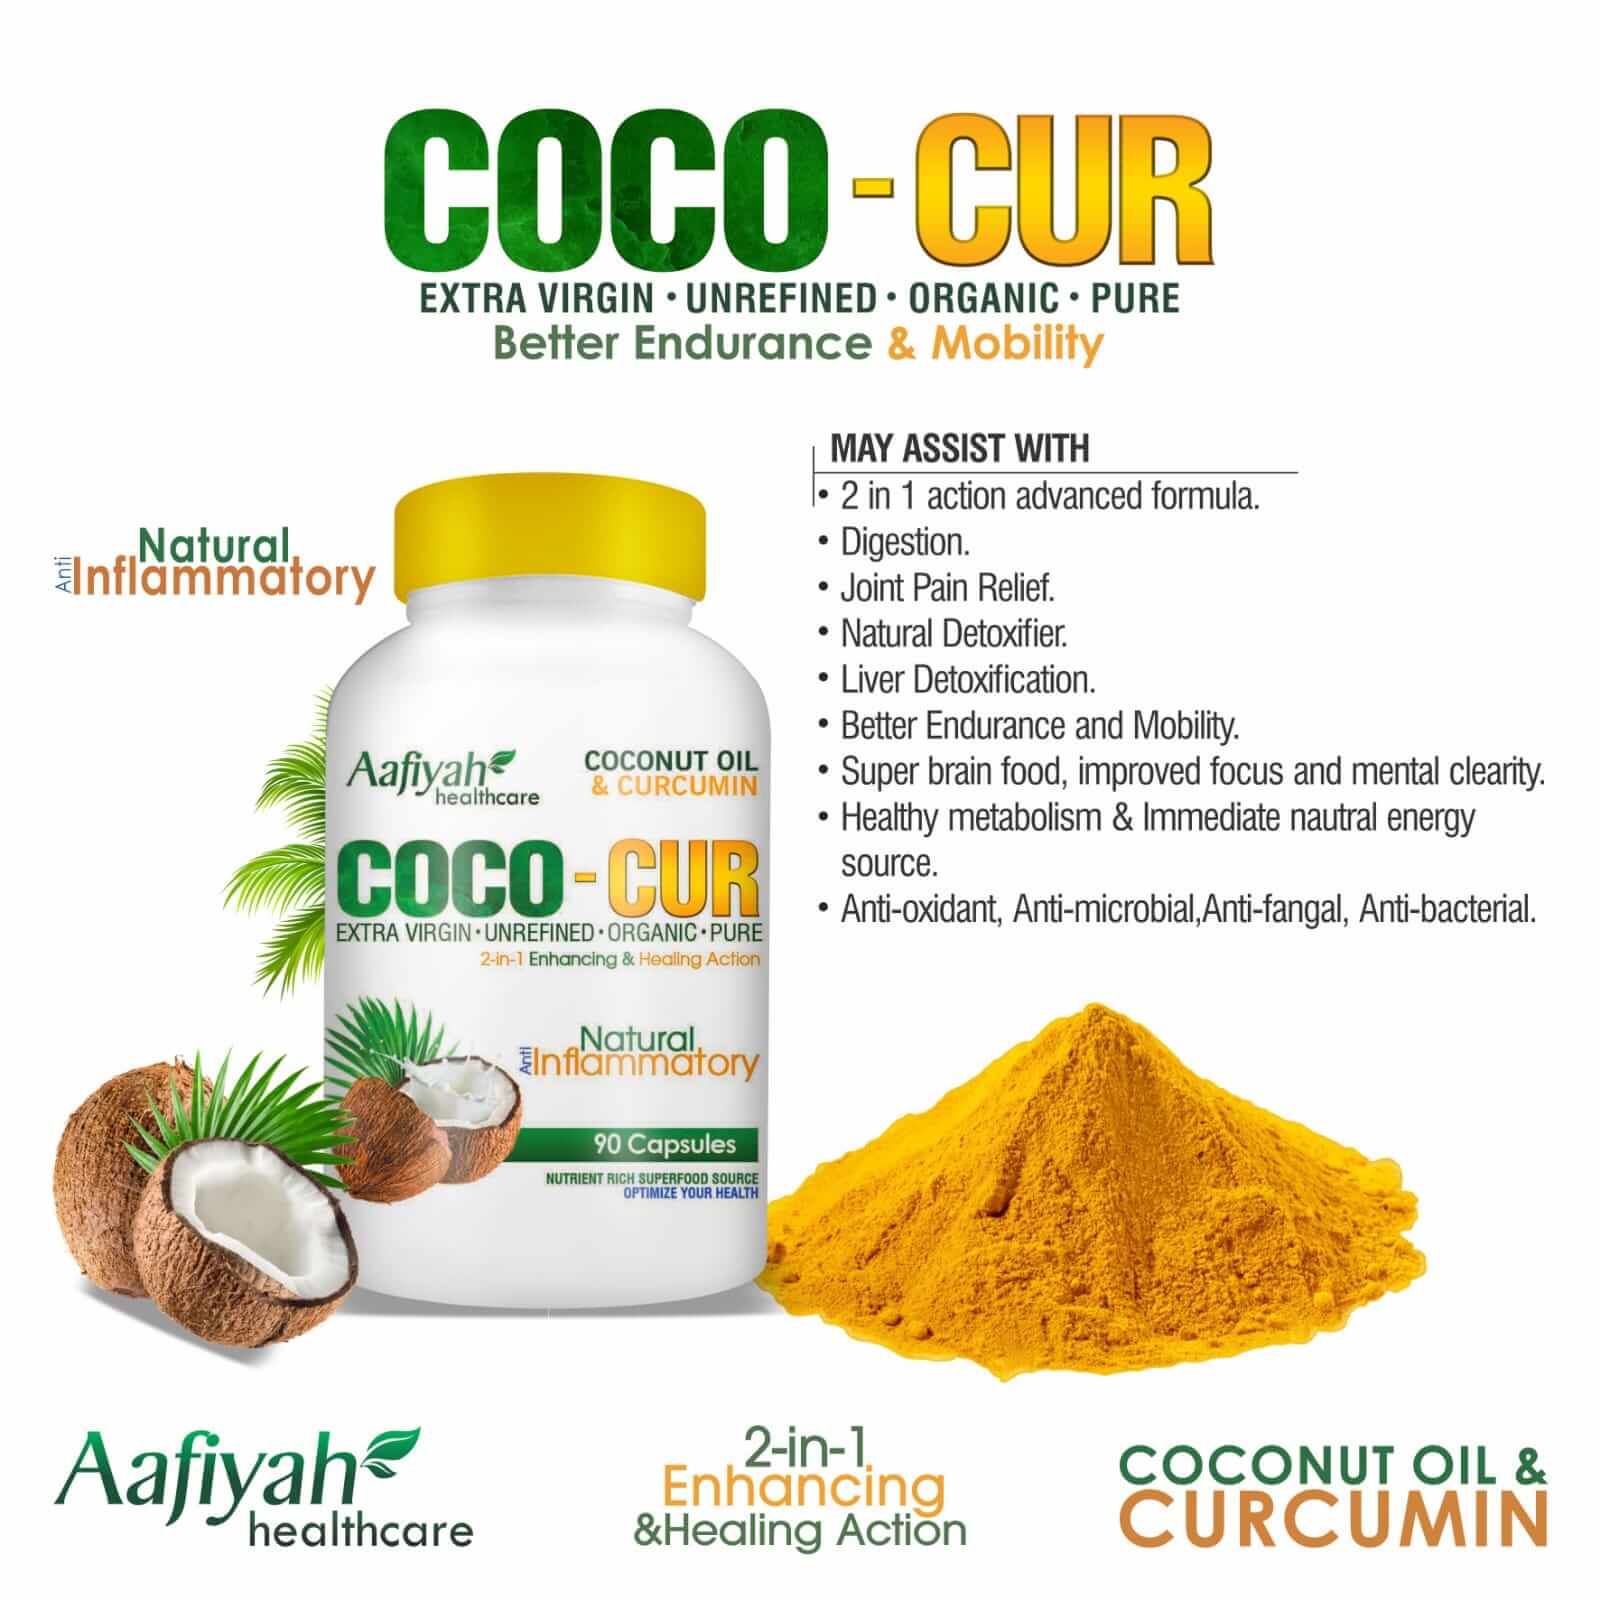 Aafiyah Healthcare Coco-Cur